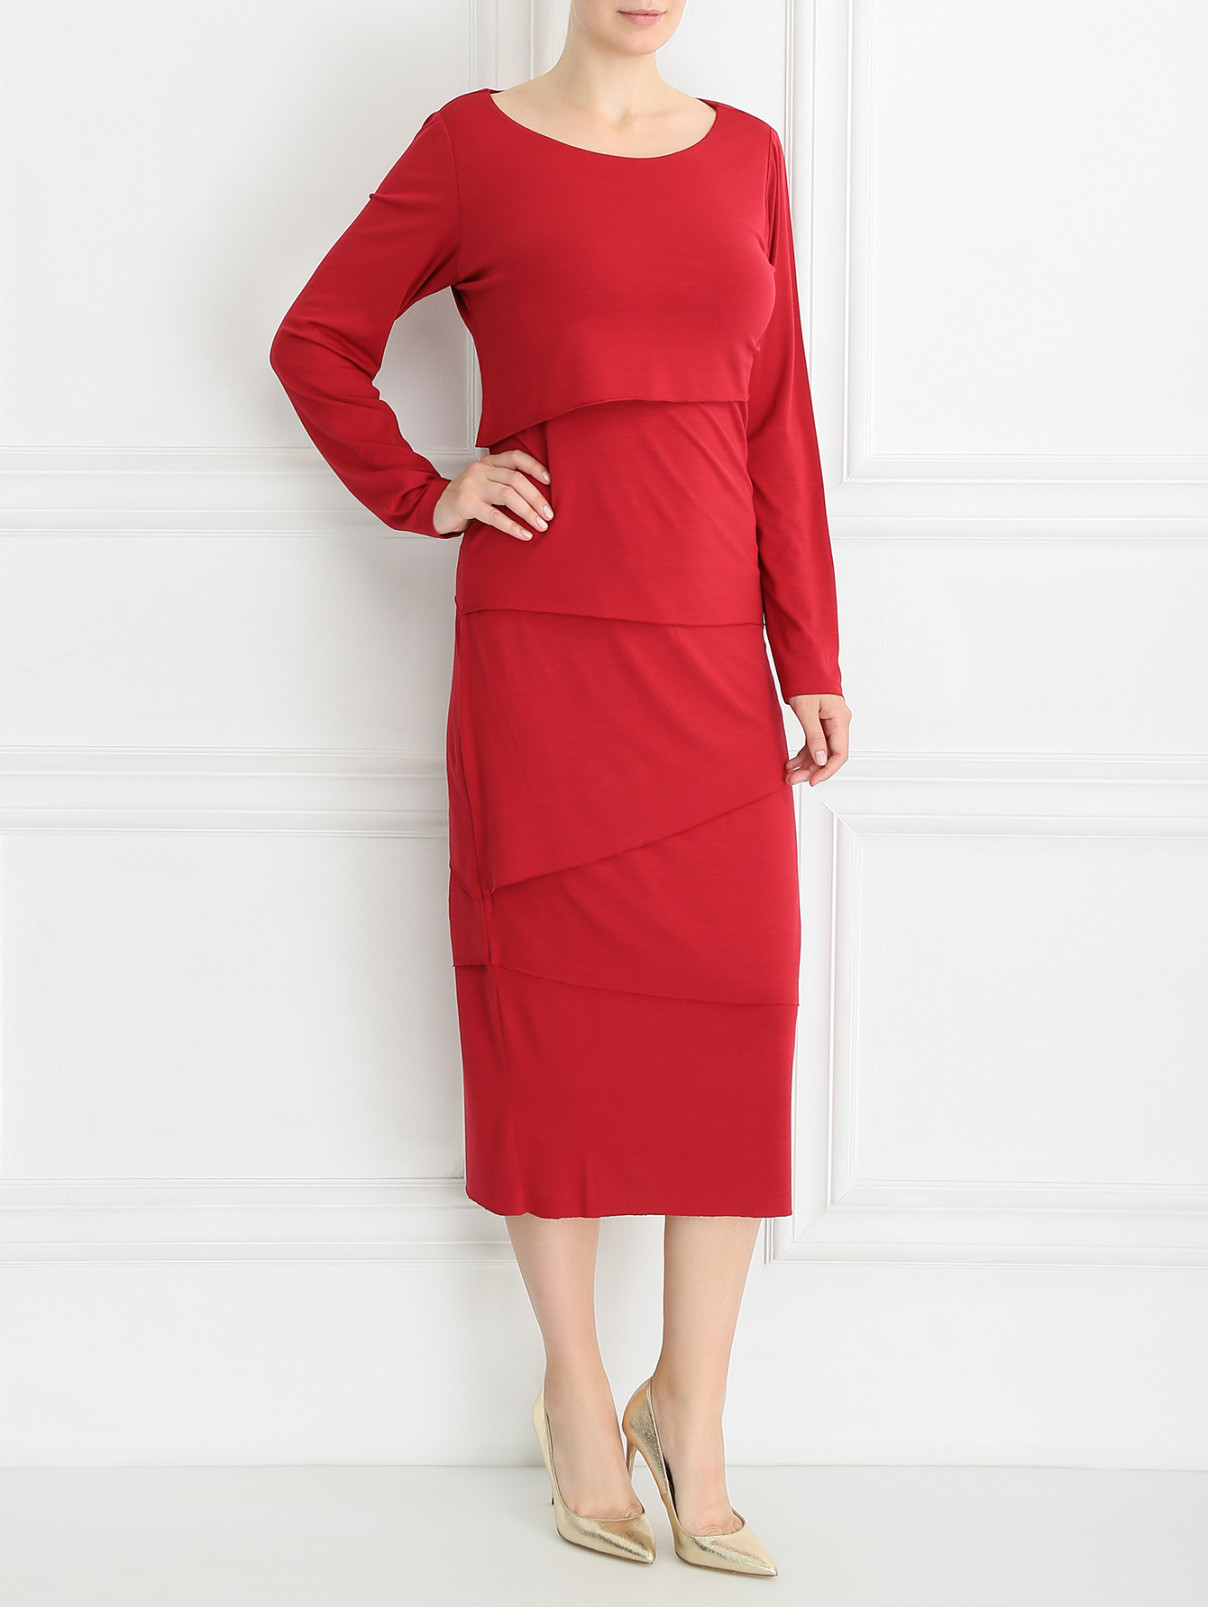 Платье с декоративными элементами Marina Rinaldi  –  Модель Общий вид  – Цвет:  Красный